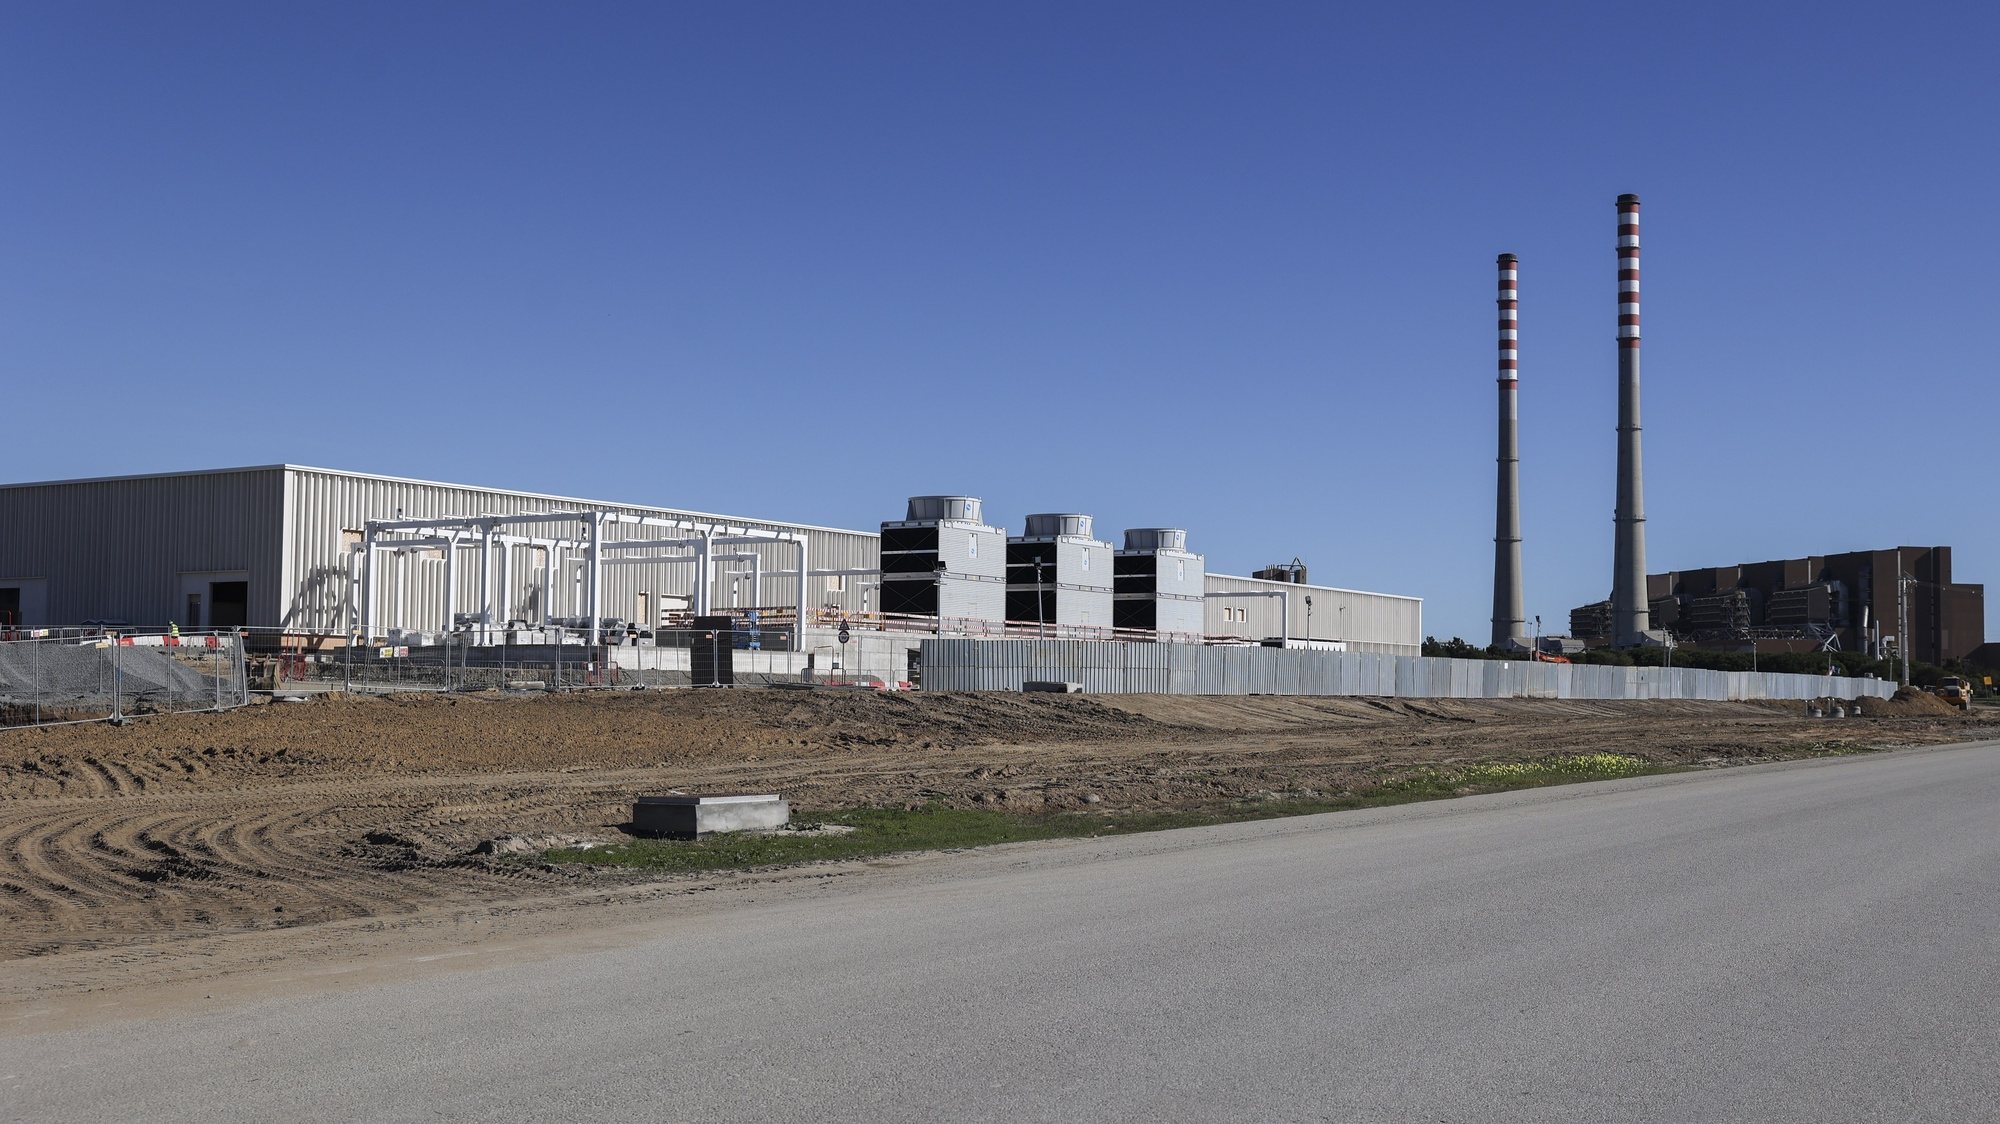 Construção do edifício do centro de dados NEST – New &amp; Emerging Sustainable Technologies, localizado na Zona Industrial e Logística de Sines (ZILS), nos terrenos contíguos à recentemente encerrada Central Termoelétrica a Carvão de Sines, em Sines, 22 de novembro 2023. O NEST insere-se no projeto SINES 4.0, um dos maiores data centers europeus. Composto por 9 edifícios (NEST com 15MW e mais 8 edifícios com 60 MW de capacidade cada), o data center será 100% verde e quando estiver terminado, em 2027, terá 495 MW de capacidade total. (ACOMPANHA TEXTO DA LUSA DE 26 DE NOVEMBRO DE 2023). MIGUEL A. LOPES/LUSA